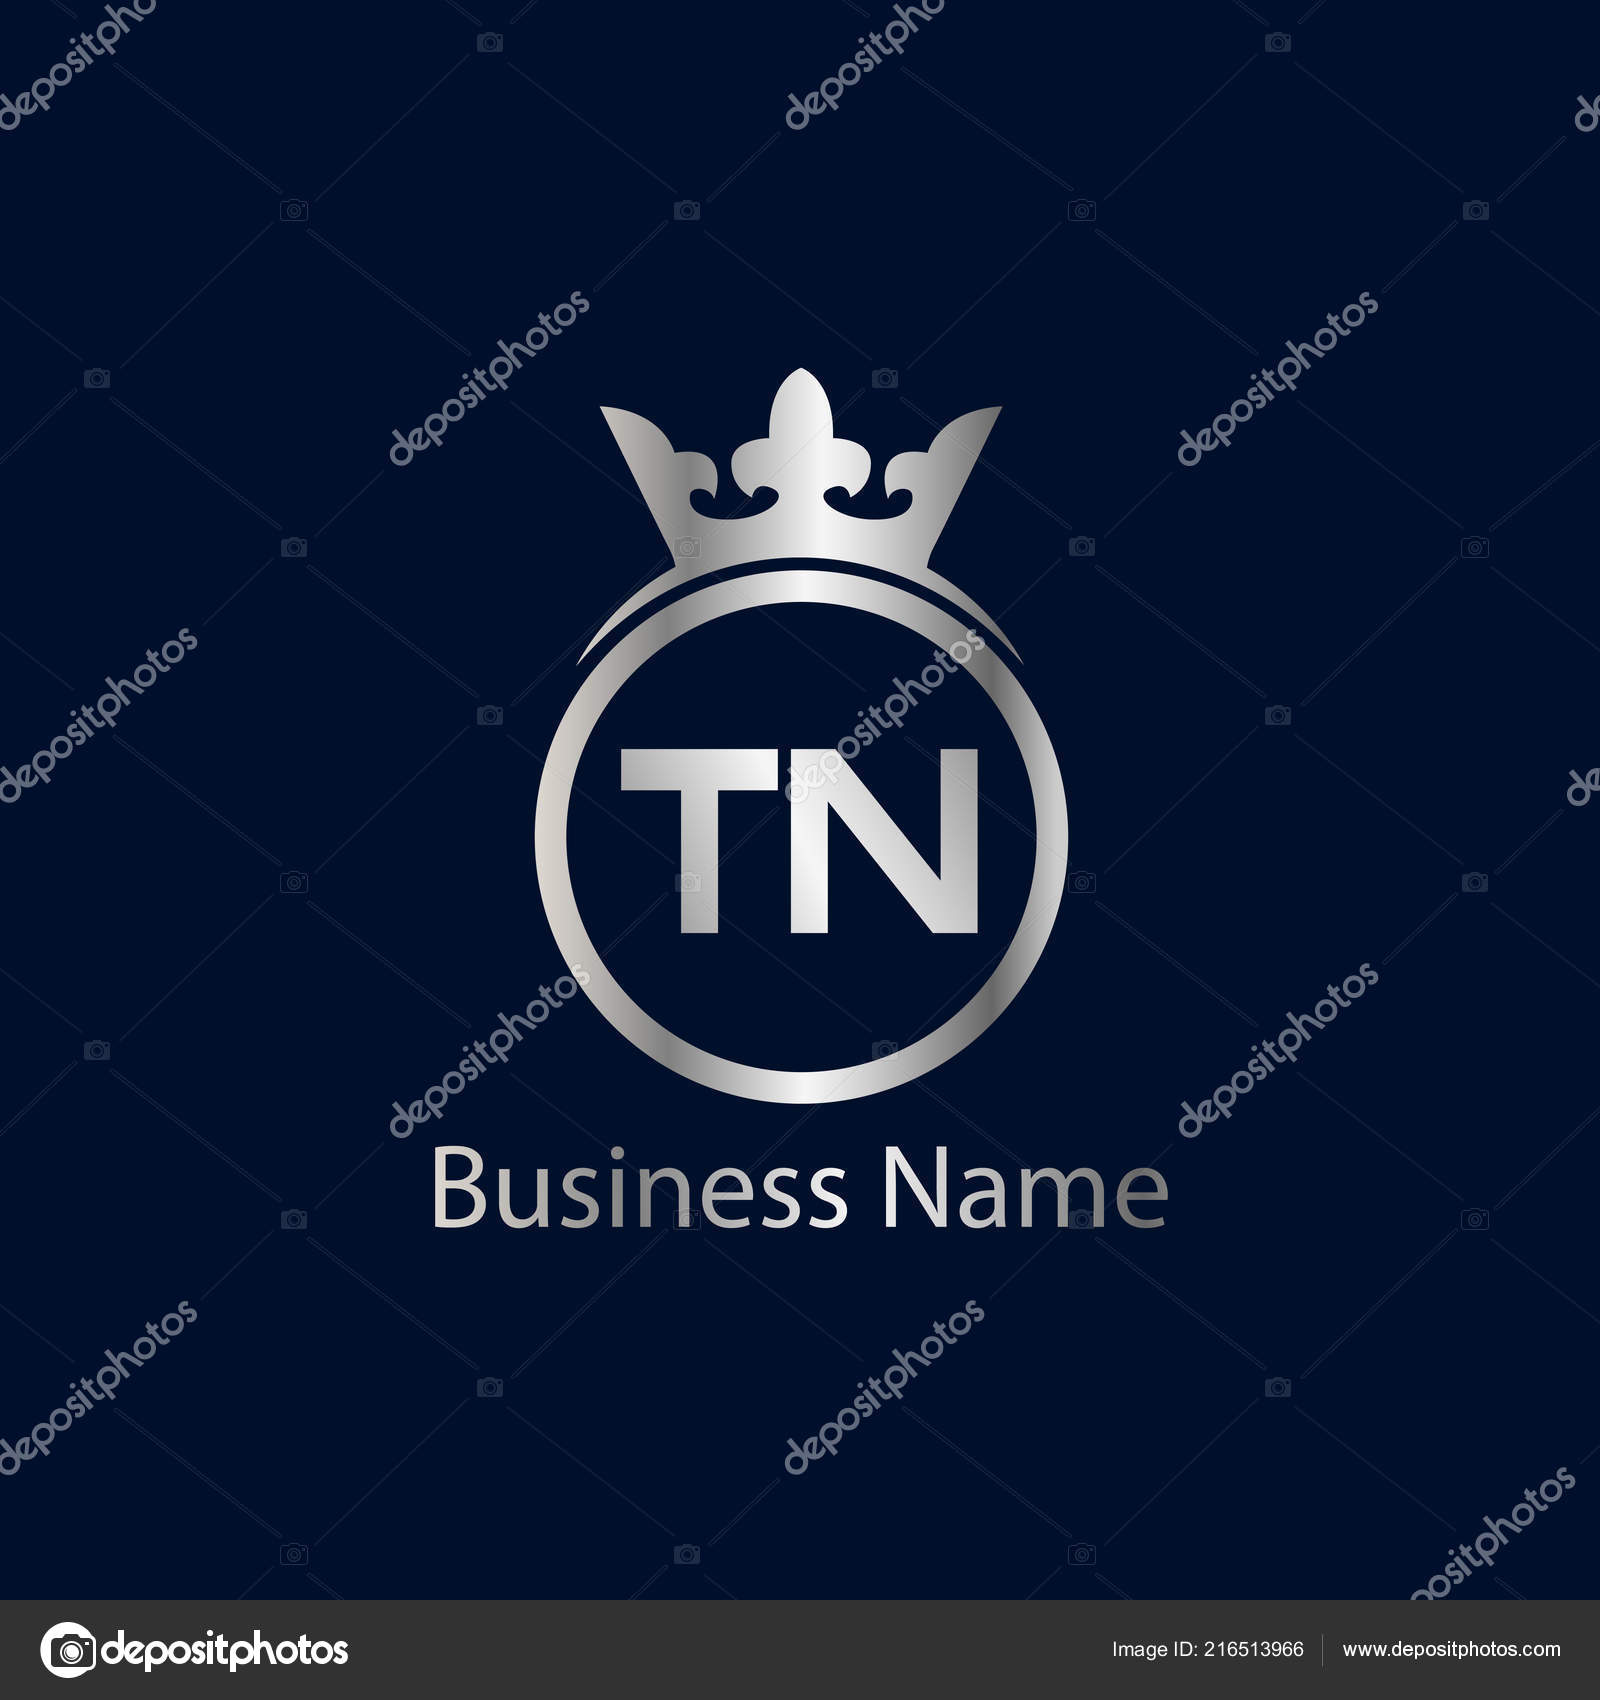 https://st4.depositphotos.com/17903764/21651/v/1600/depositphotos_216513966-stock-illustration-initial-letter-logo-template-design.jpg